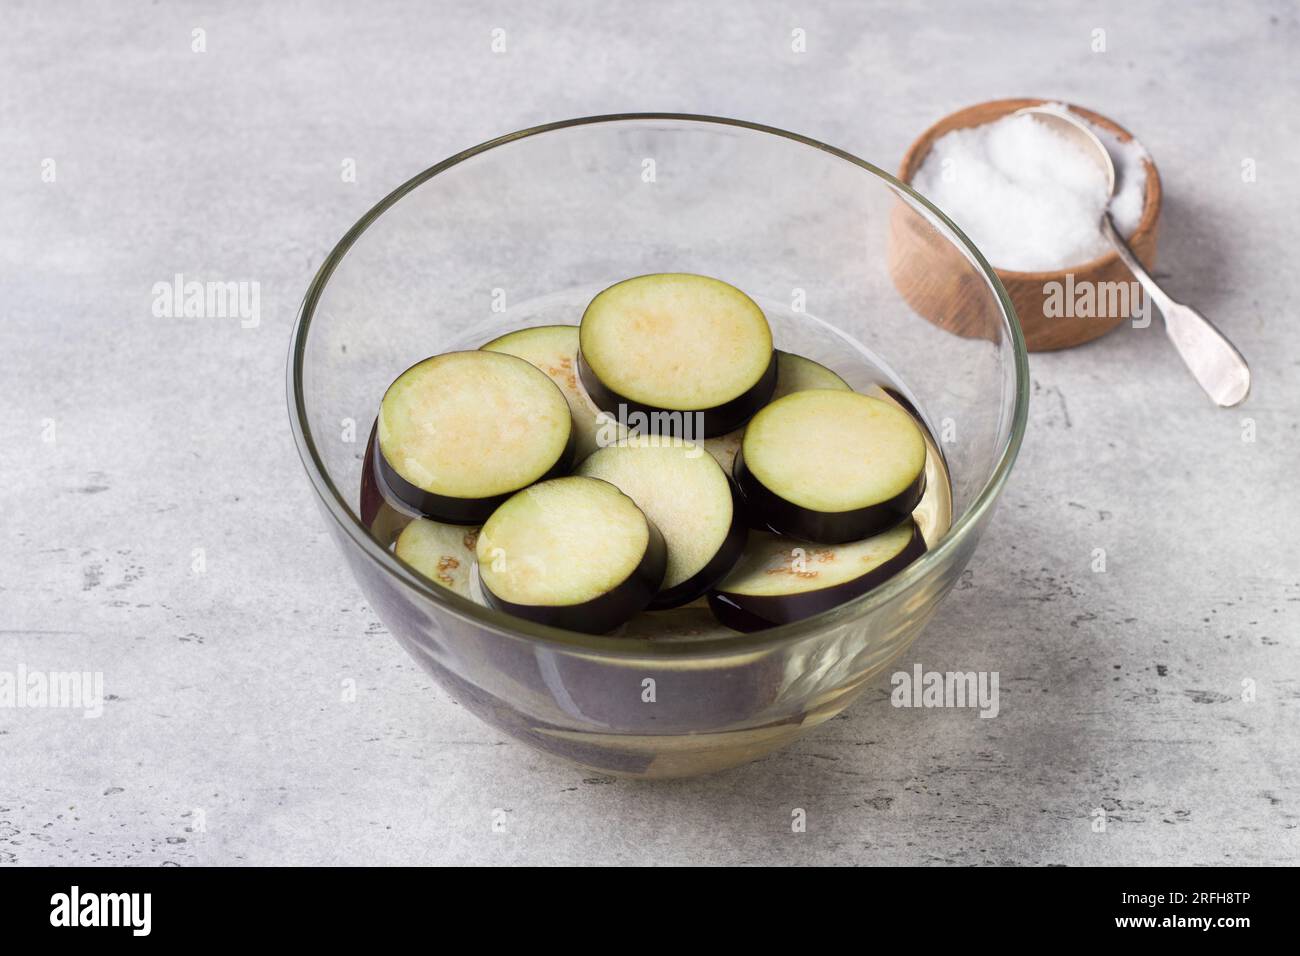 Immergere le melanzane in acqua salata in una ciotola di vetro su uno sfondo grigio ruvido. Lavorazione delle melanzane prima della cottura, eliminando l'amaro. Foto Stock